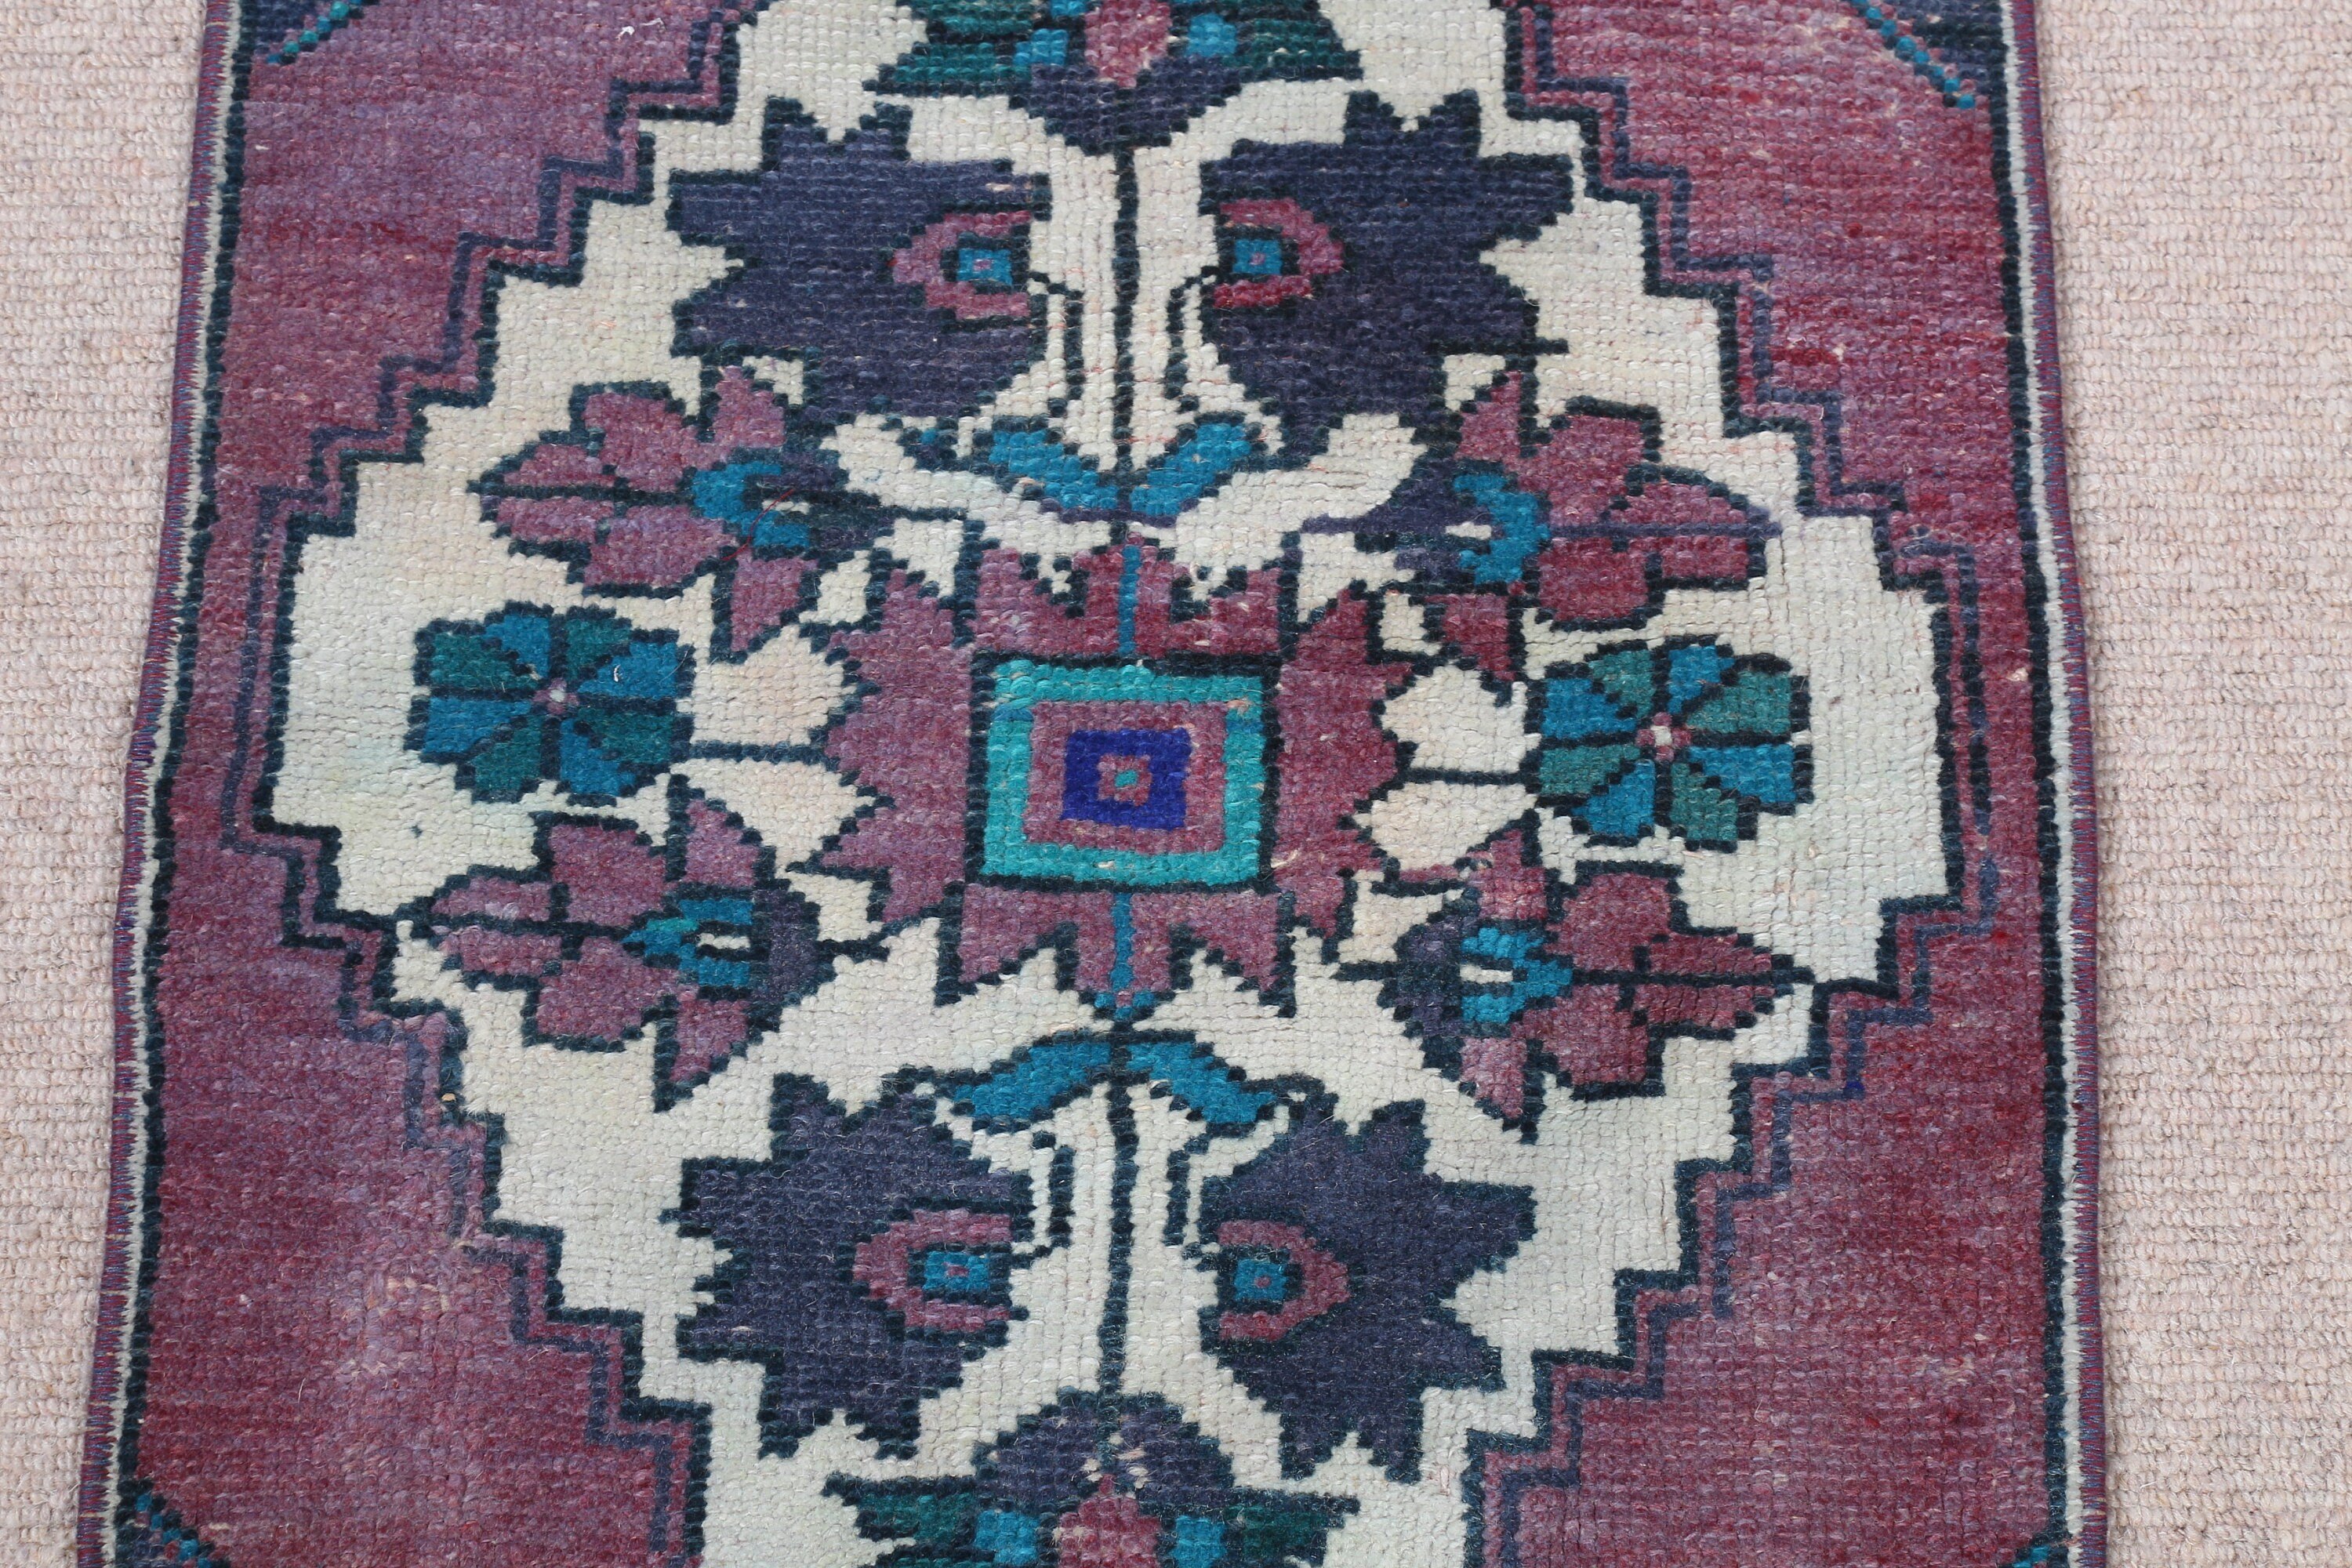 Rugs for Door Mat, Turkish Rug, Blue Wool Rug, 1.5x3 ft Small Rug, Car Mat Rug, Anatolian Rug, Vintage Rug, Bathroom Rug, Oriental Rug